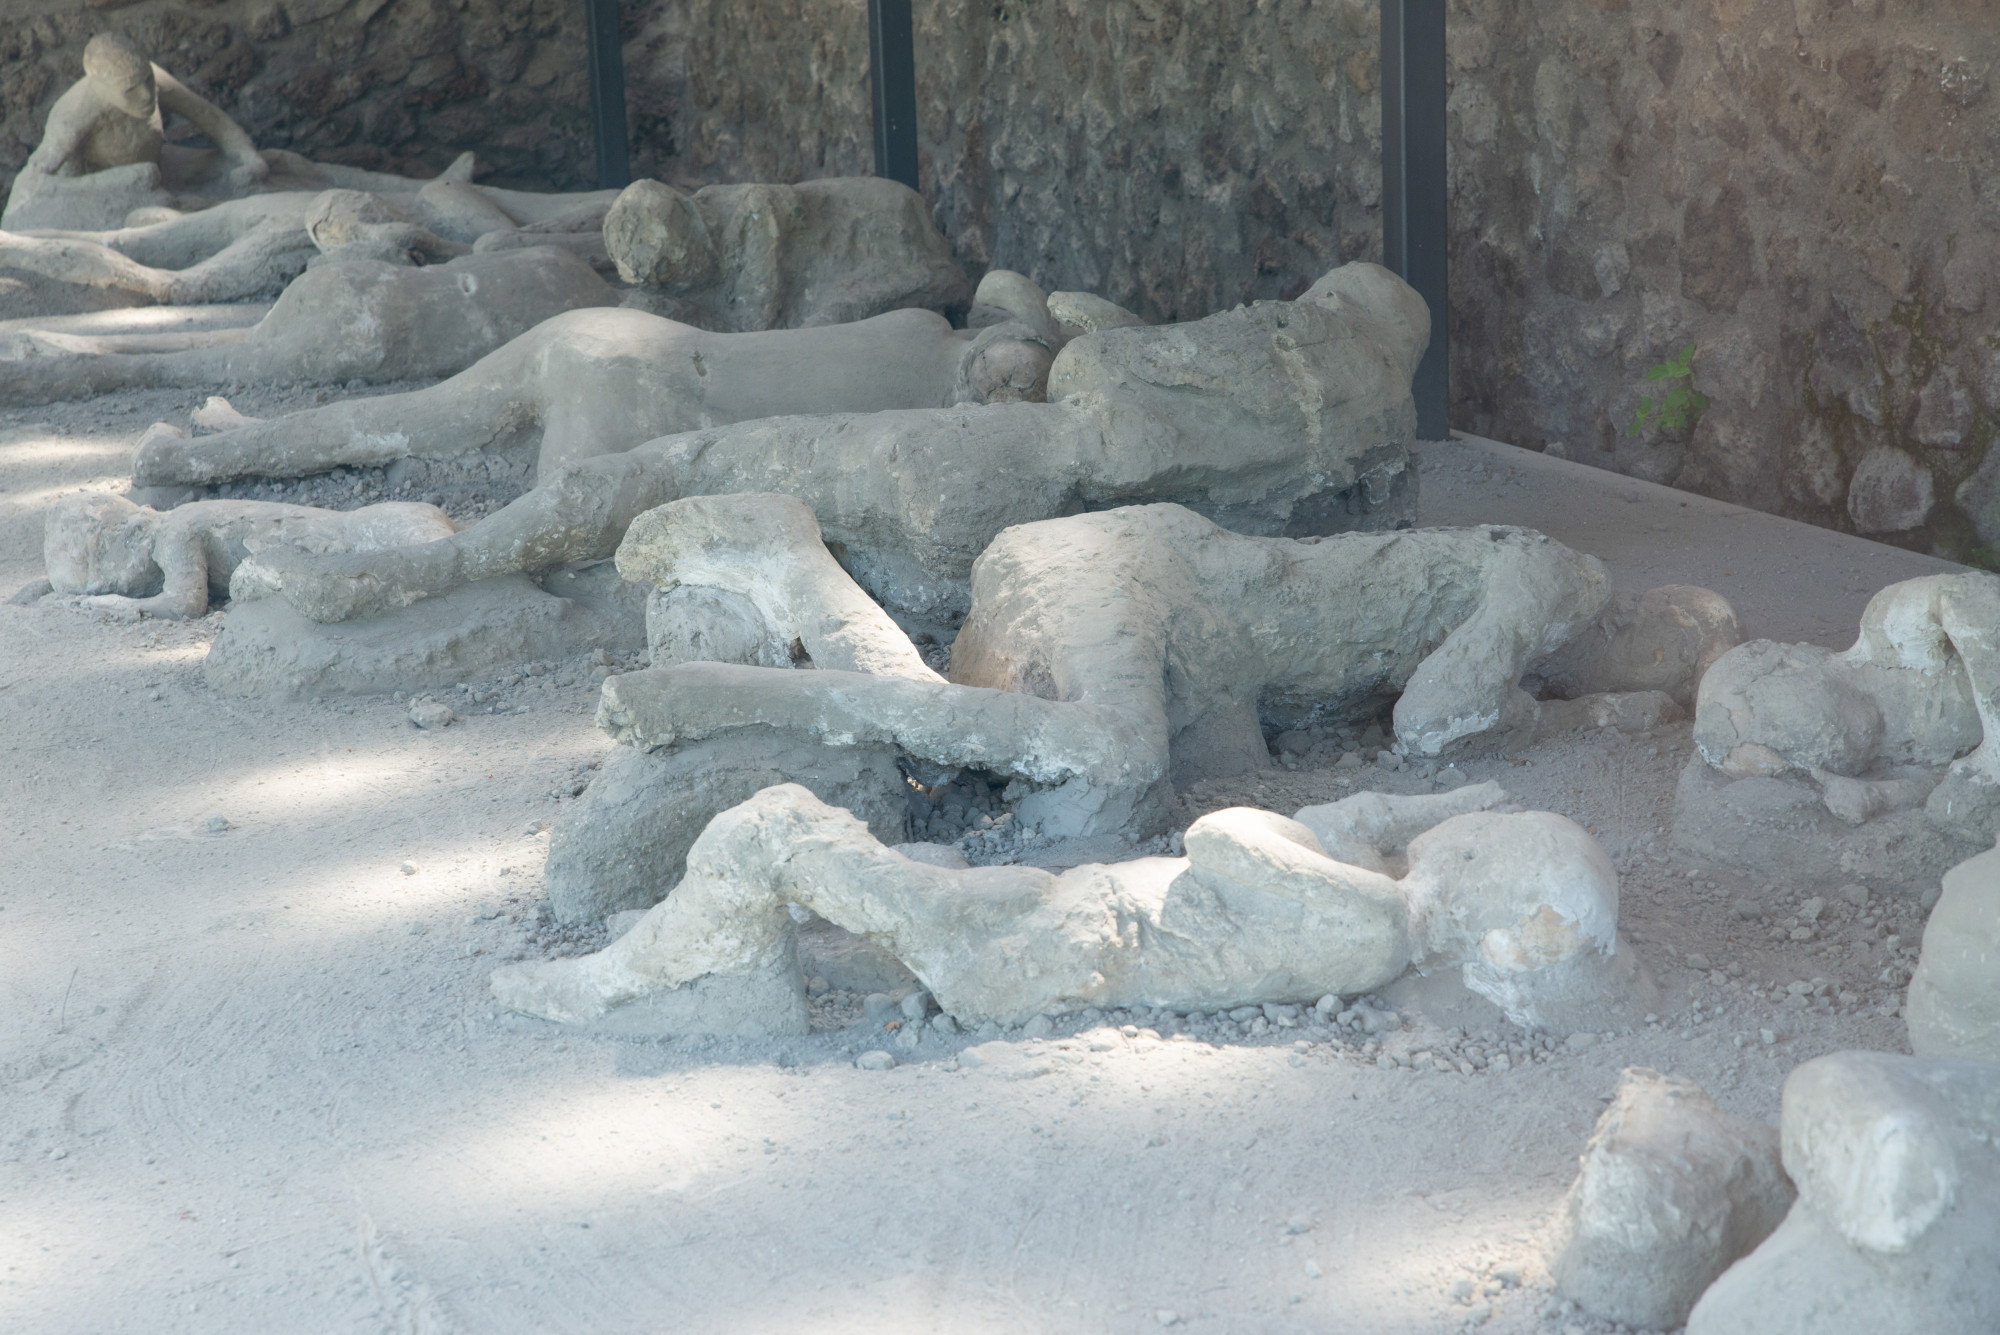 Röntgenfluoreszcens vizsgálatok mutatnak rá, hogy a pompeji áldozatok egy részének halálát fulladás okozhatta